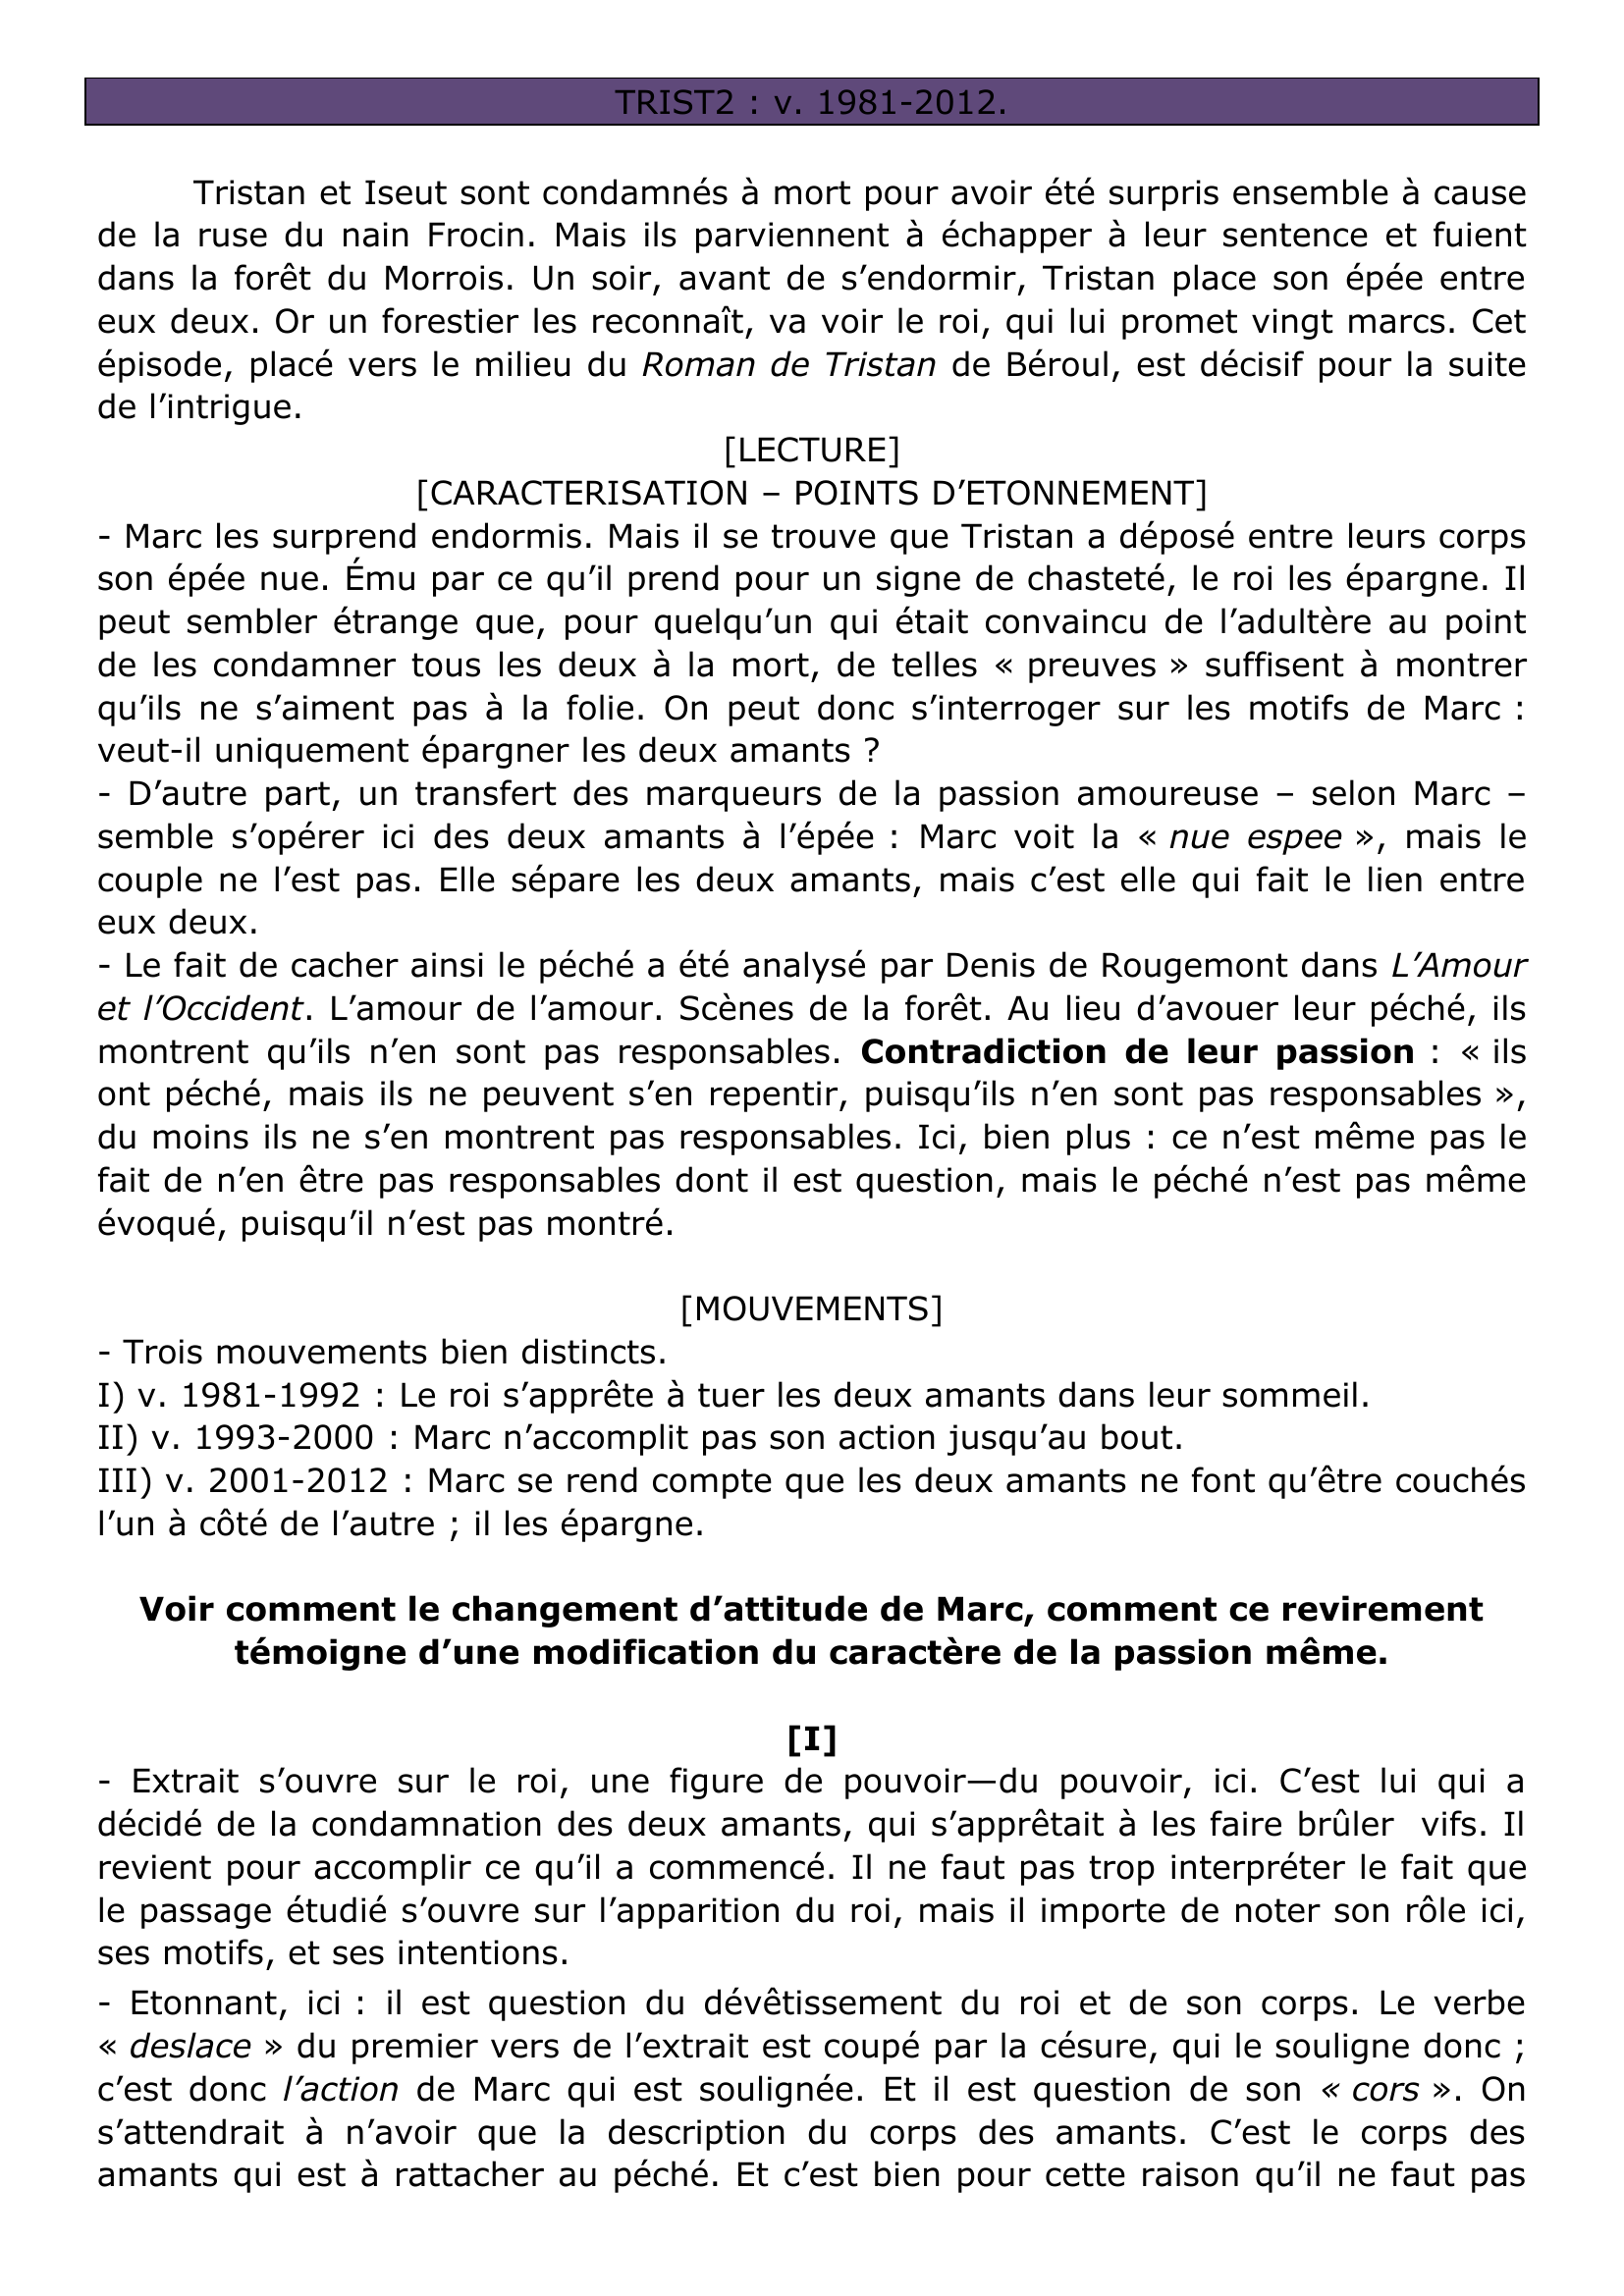 Prévisualisation du document Béroul Tristan et Iseut v 1981-2012